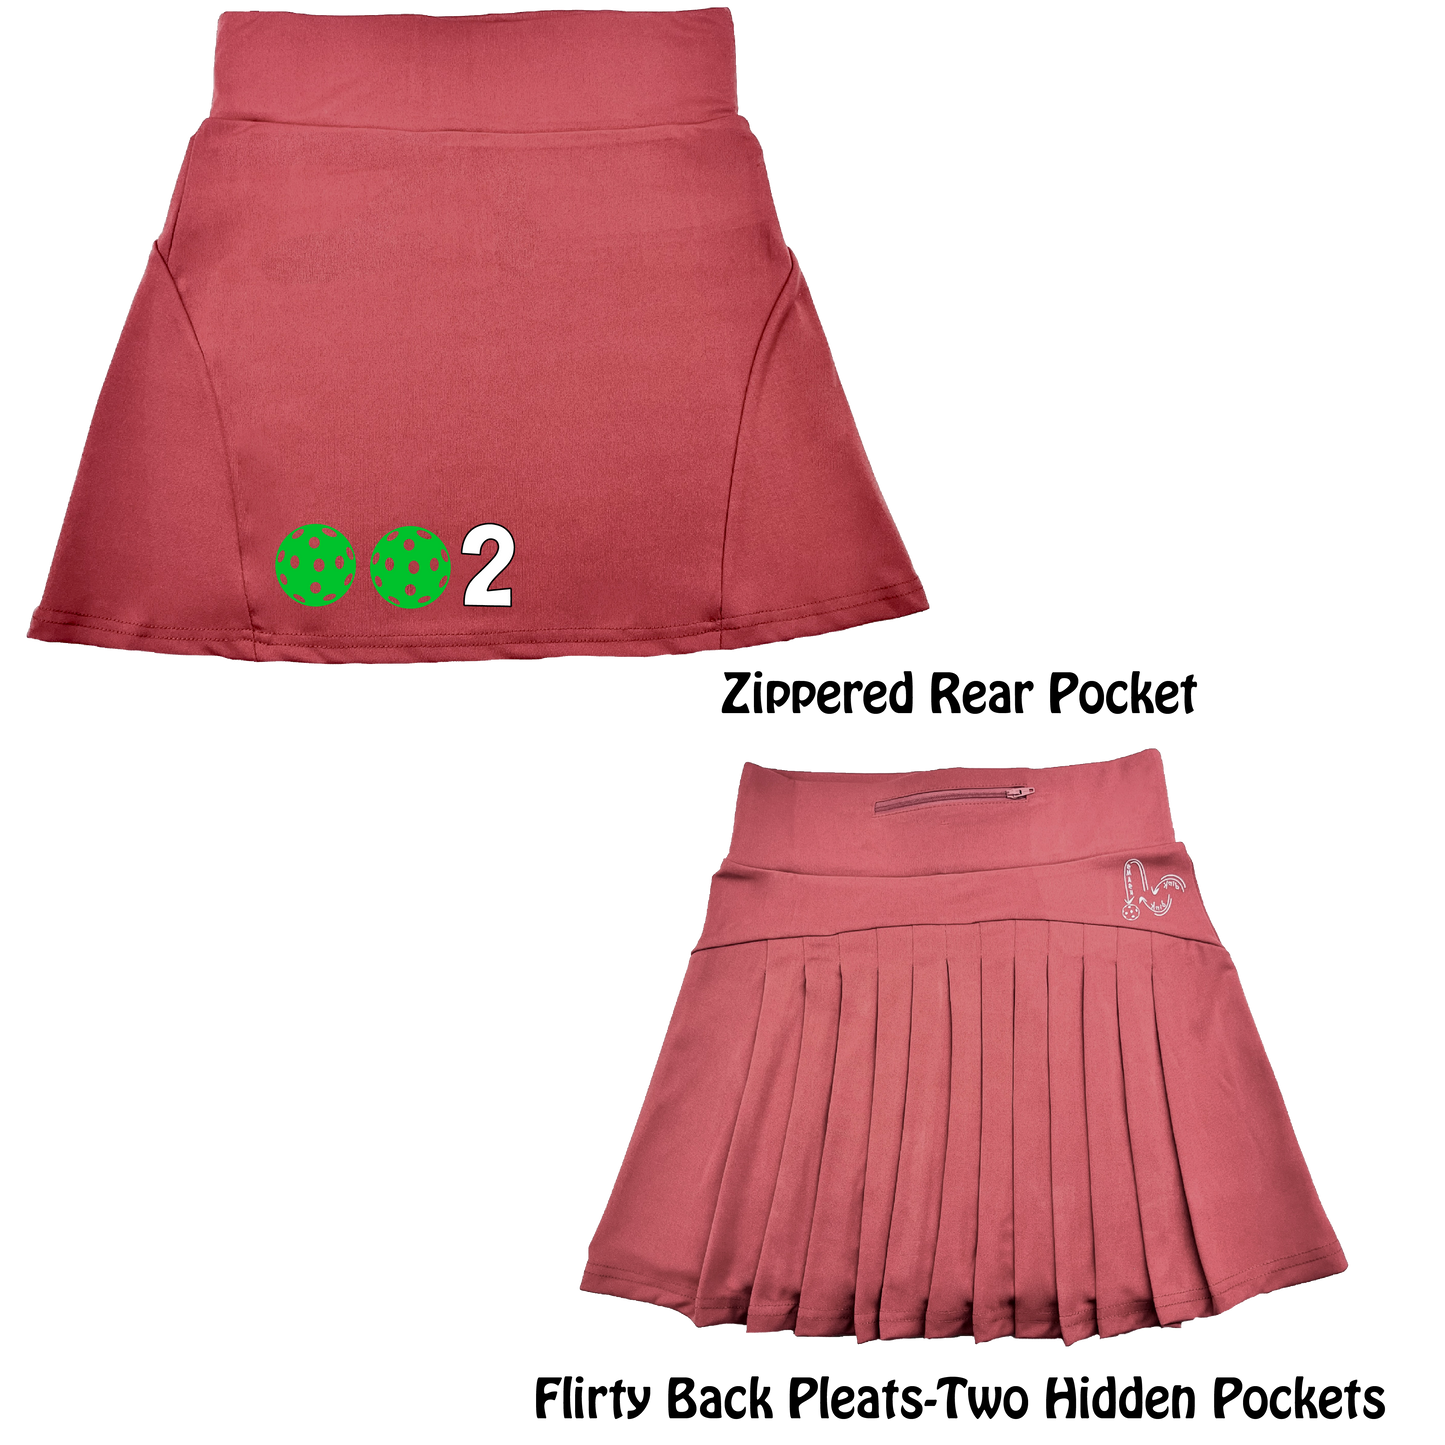 002 With Pickleballs (Colors Green, Orange, Red) | Women's Flirty Pickleball Skort